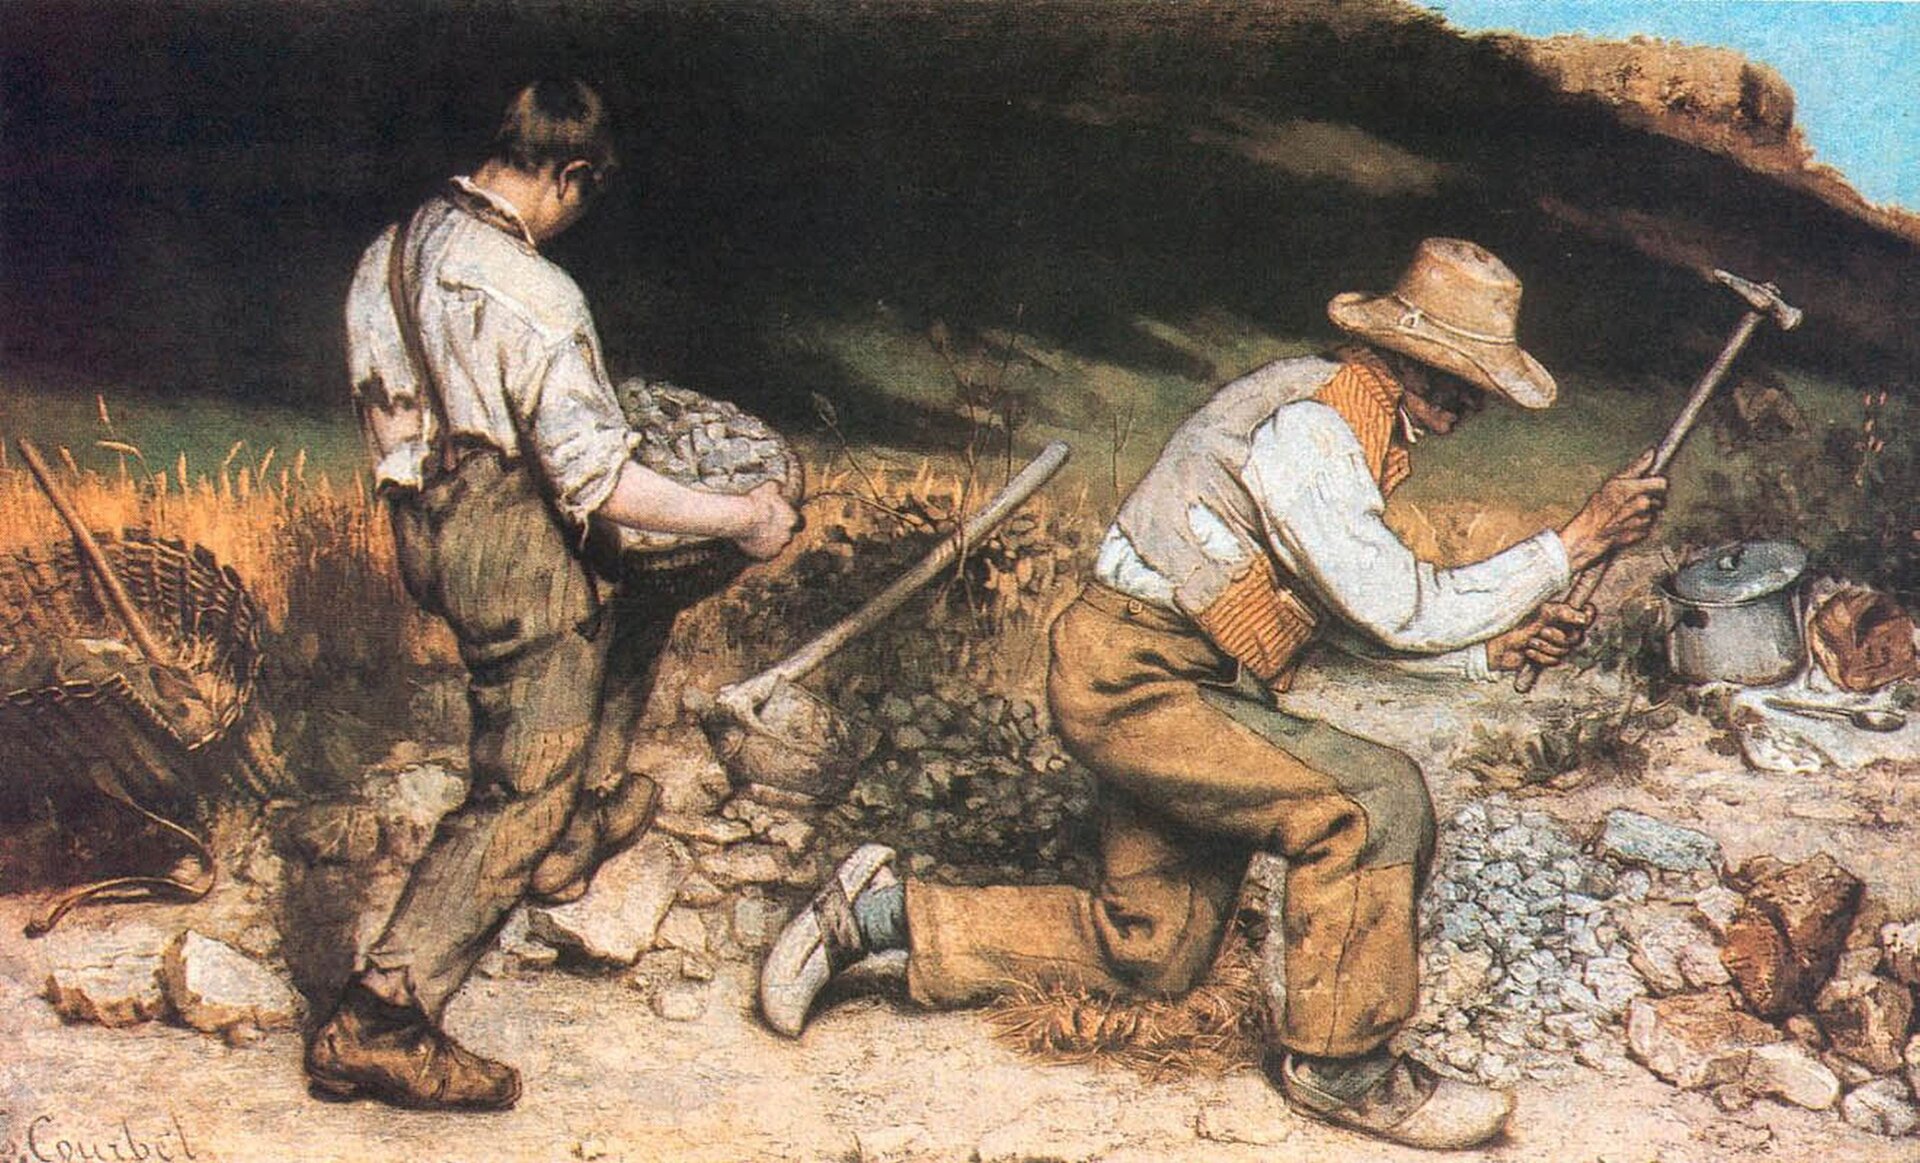 Ilustracja przedstawia obraz Gustava Courbeta „Kamieniarze”. Ukazuje postać dwóch mężczyzn, którzy pracują jako kamieniarze. Jedna z postaci uderza młotkiem w kamień leżący na ziemi. Drugi z mężczyzn trzyma, podpierając kolanem spory głaz. Pracownicy mają na sobie starą, zniszczoną odzież i zużyte buty.